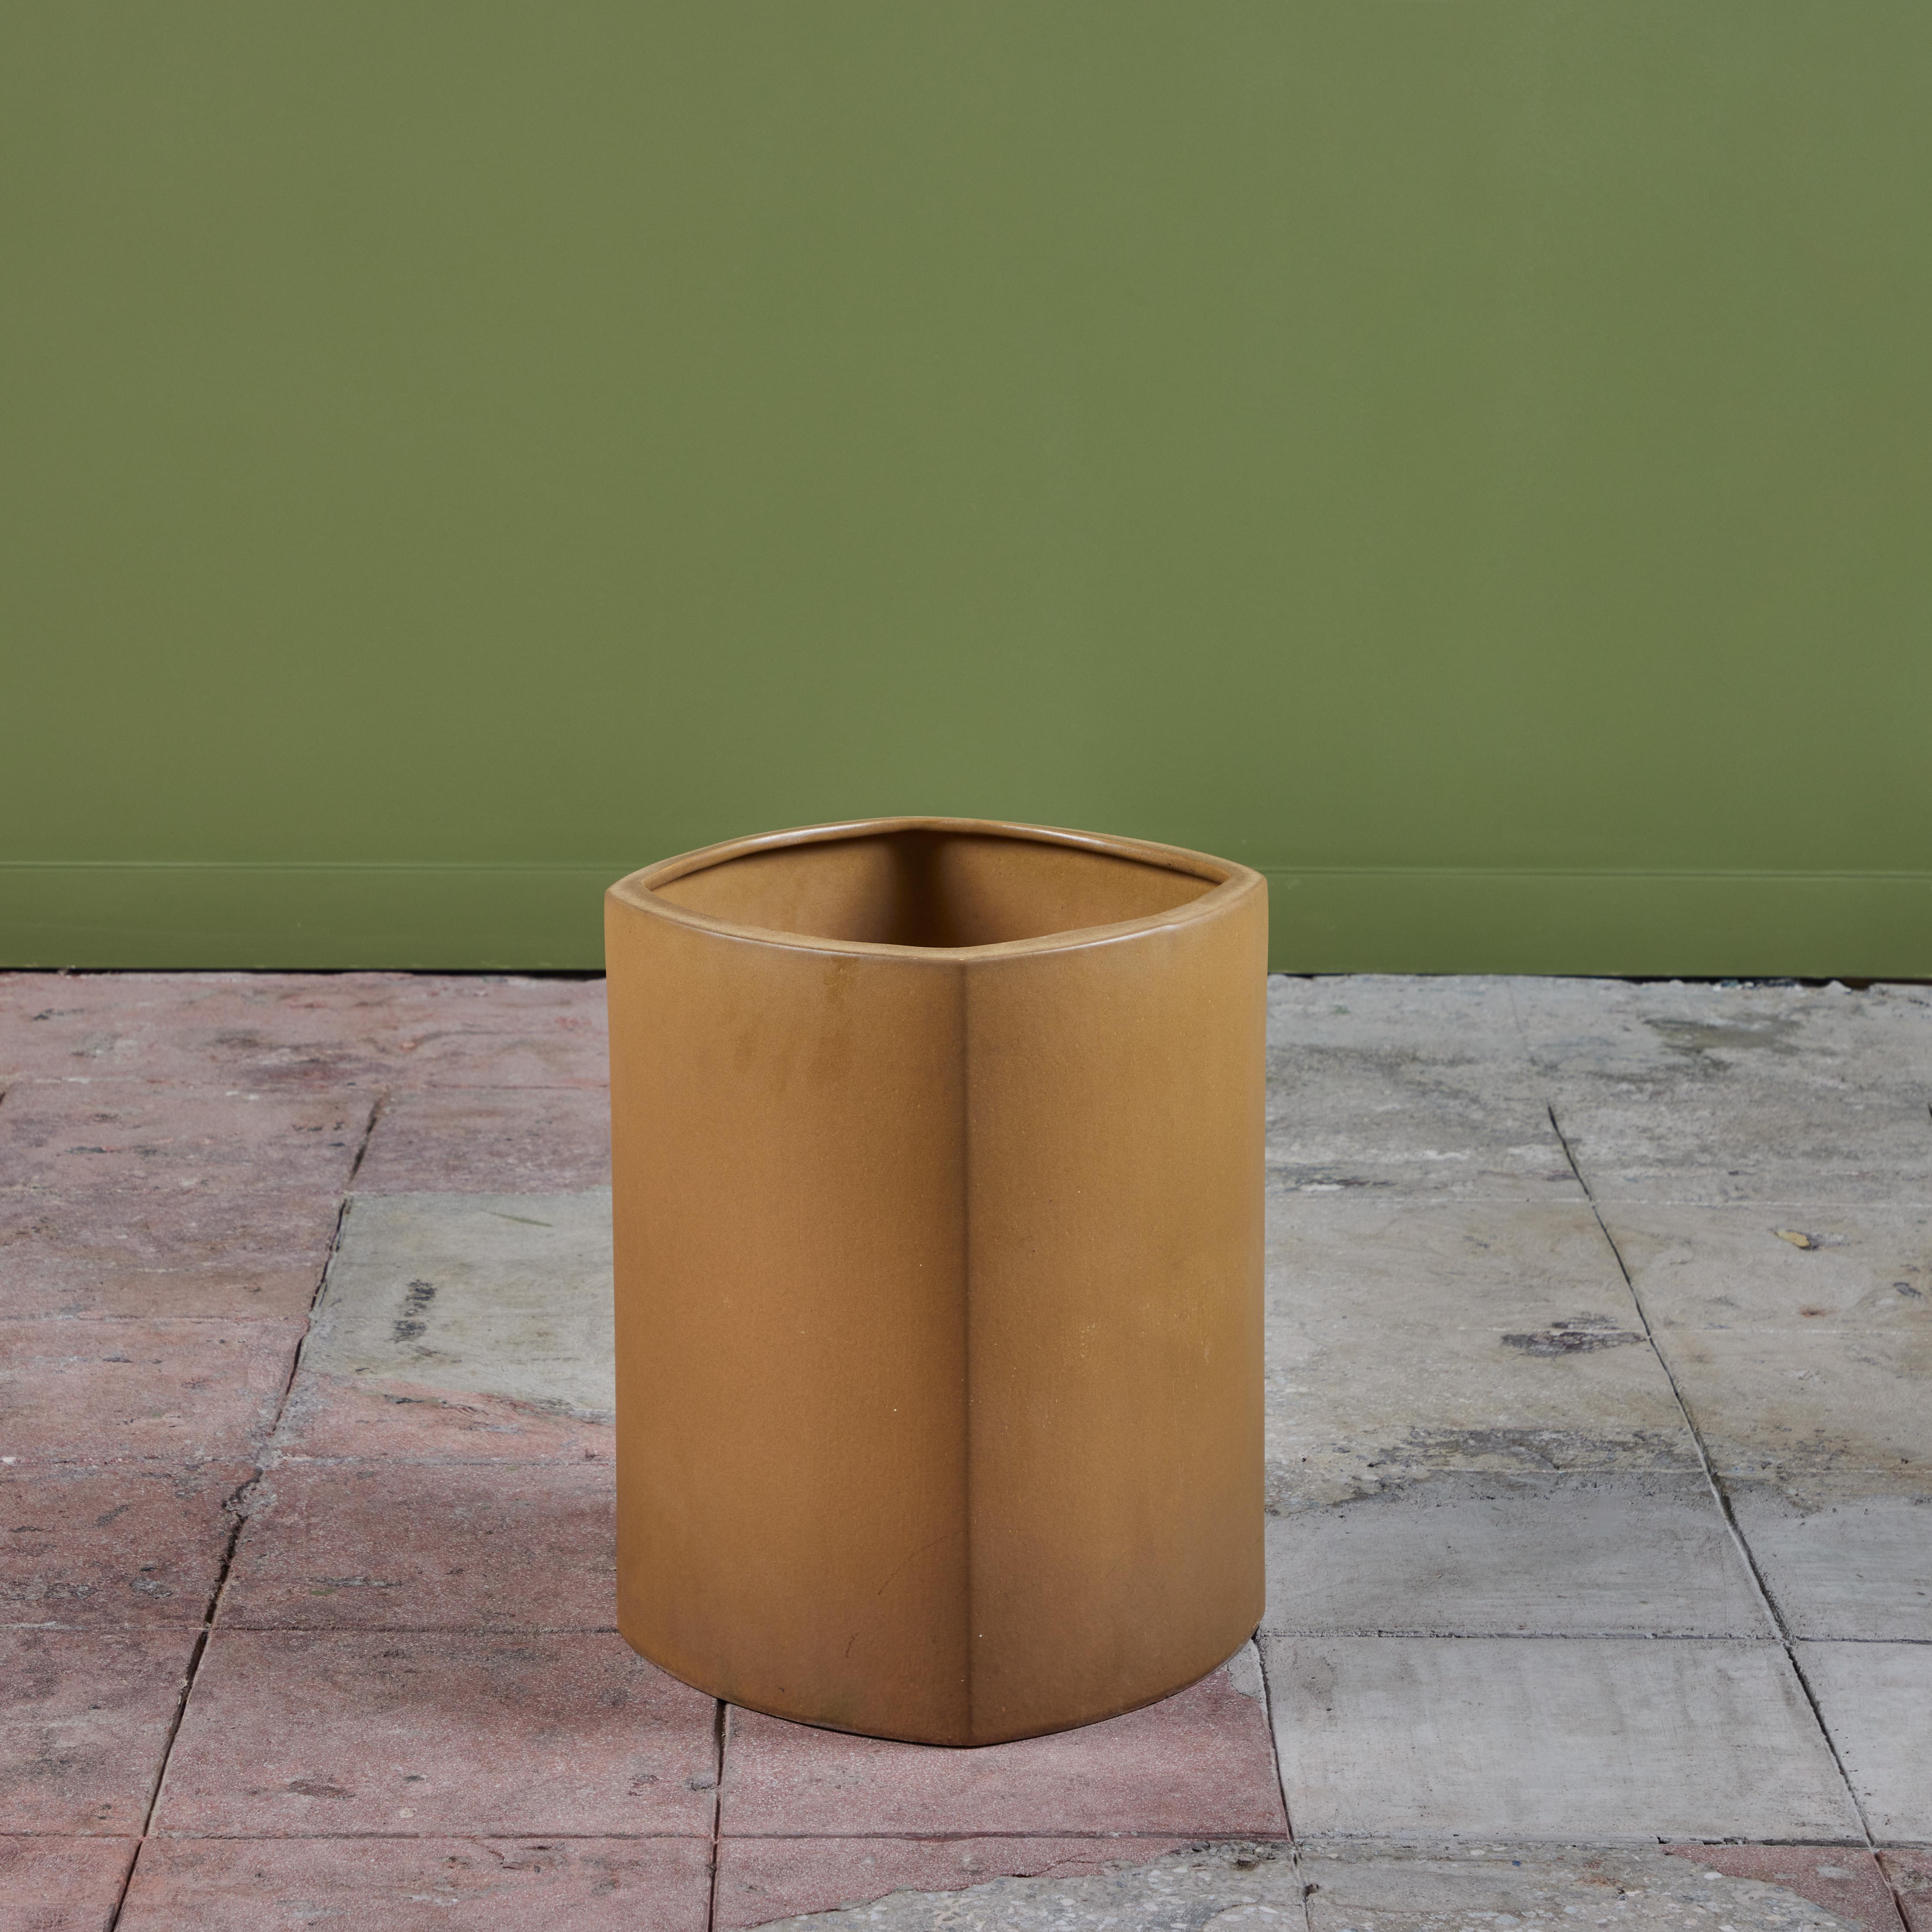 Jardinière émaillée en or par l'artiste céramiste Marilyn Kay Austin pour Architectural Pottery. Cet exemple présente une forme carrée arrondie. Le glaçage doré se retrouve aussi bien à l'intérieur qu'à l'extérieur. Peut être utilisé comme un